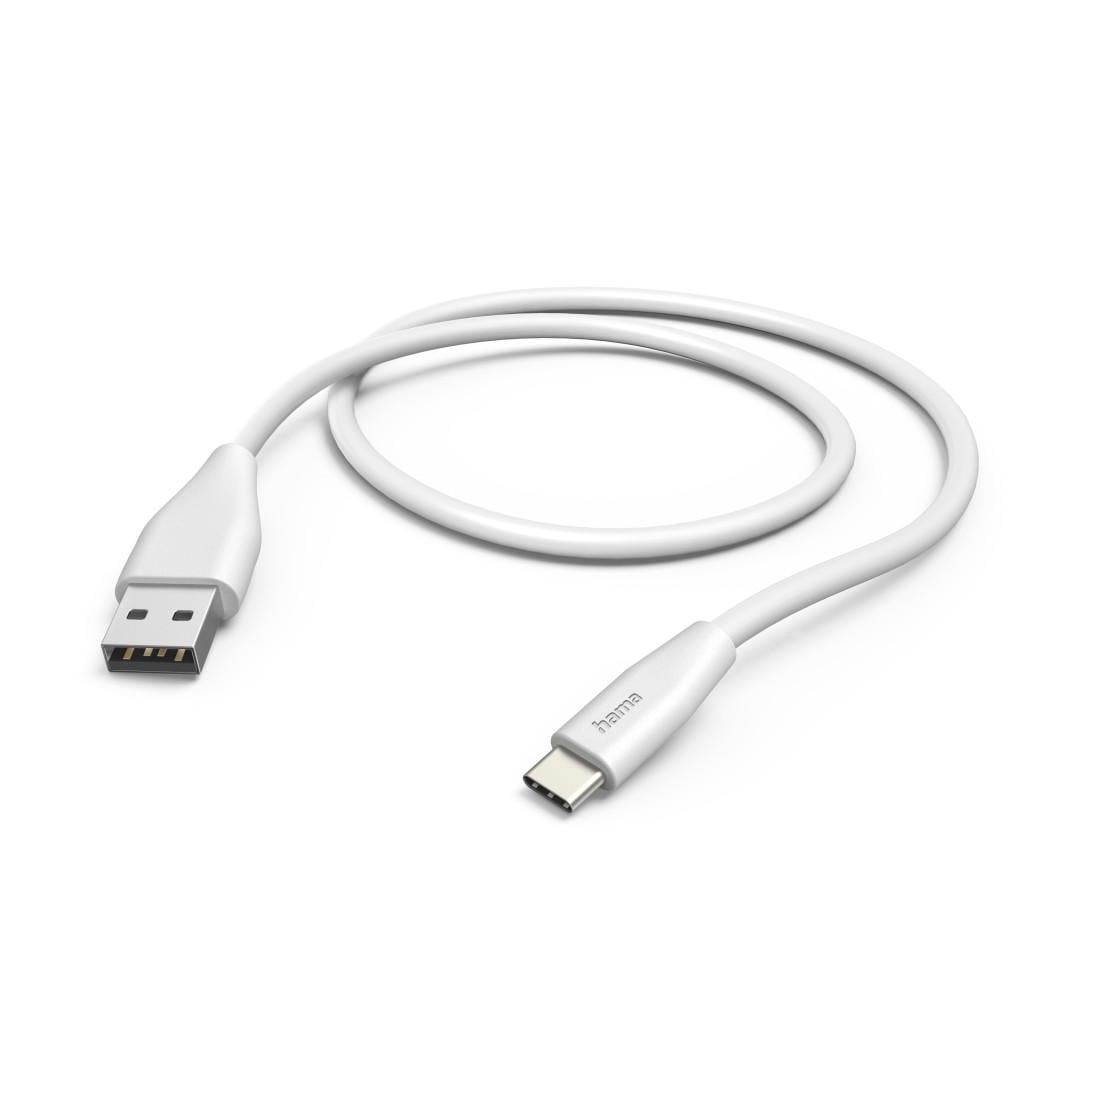 Hama USB-Kabel »Ladekabel, USB A, USB C, 1,5 m, Weiß«, USB-C-USB Typ A, 150 cm